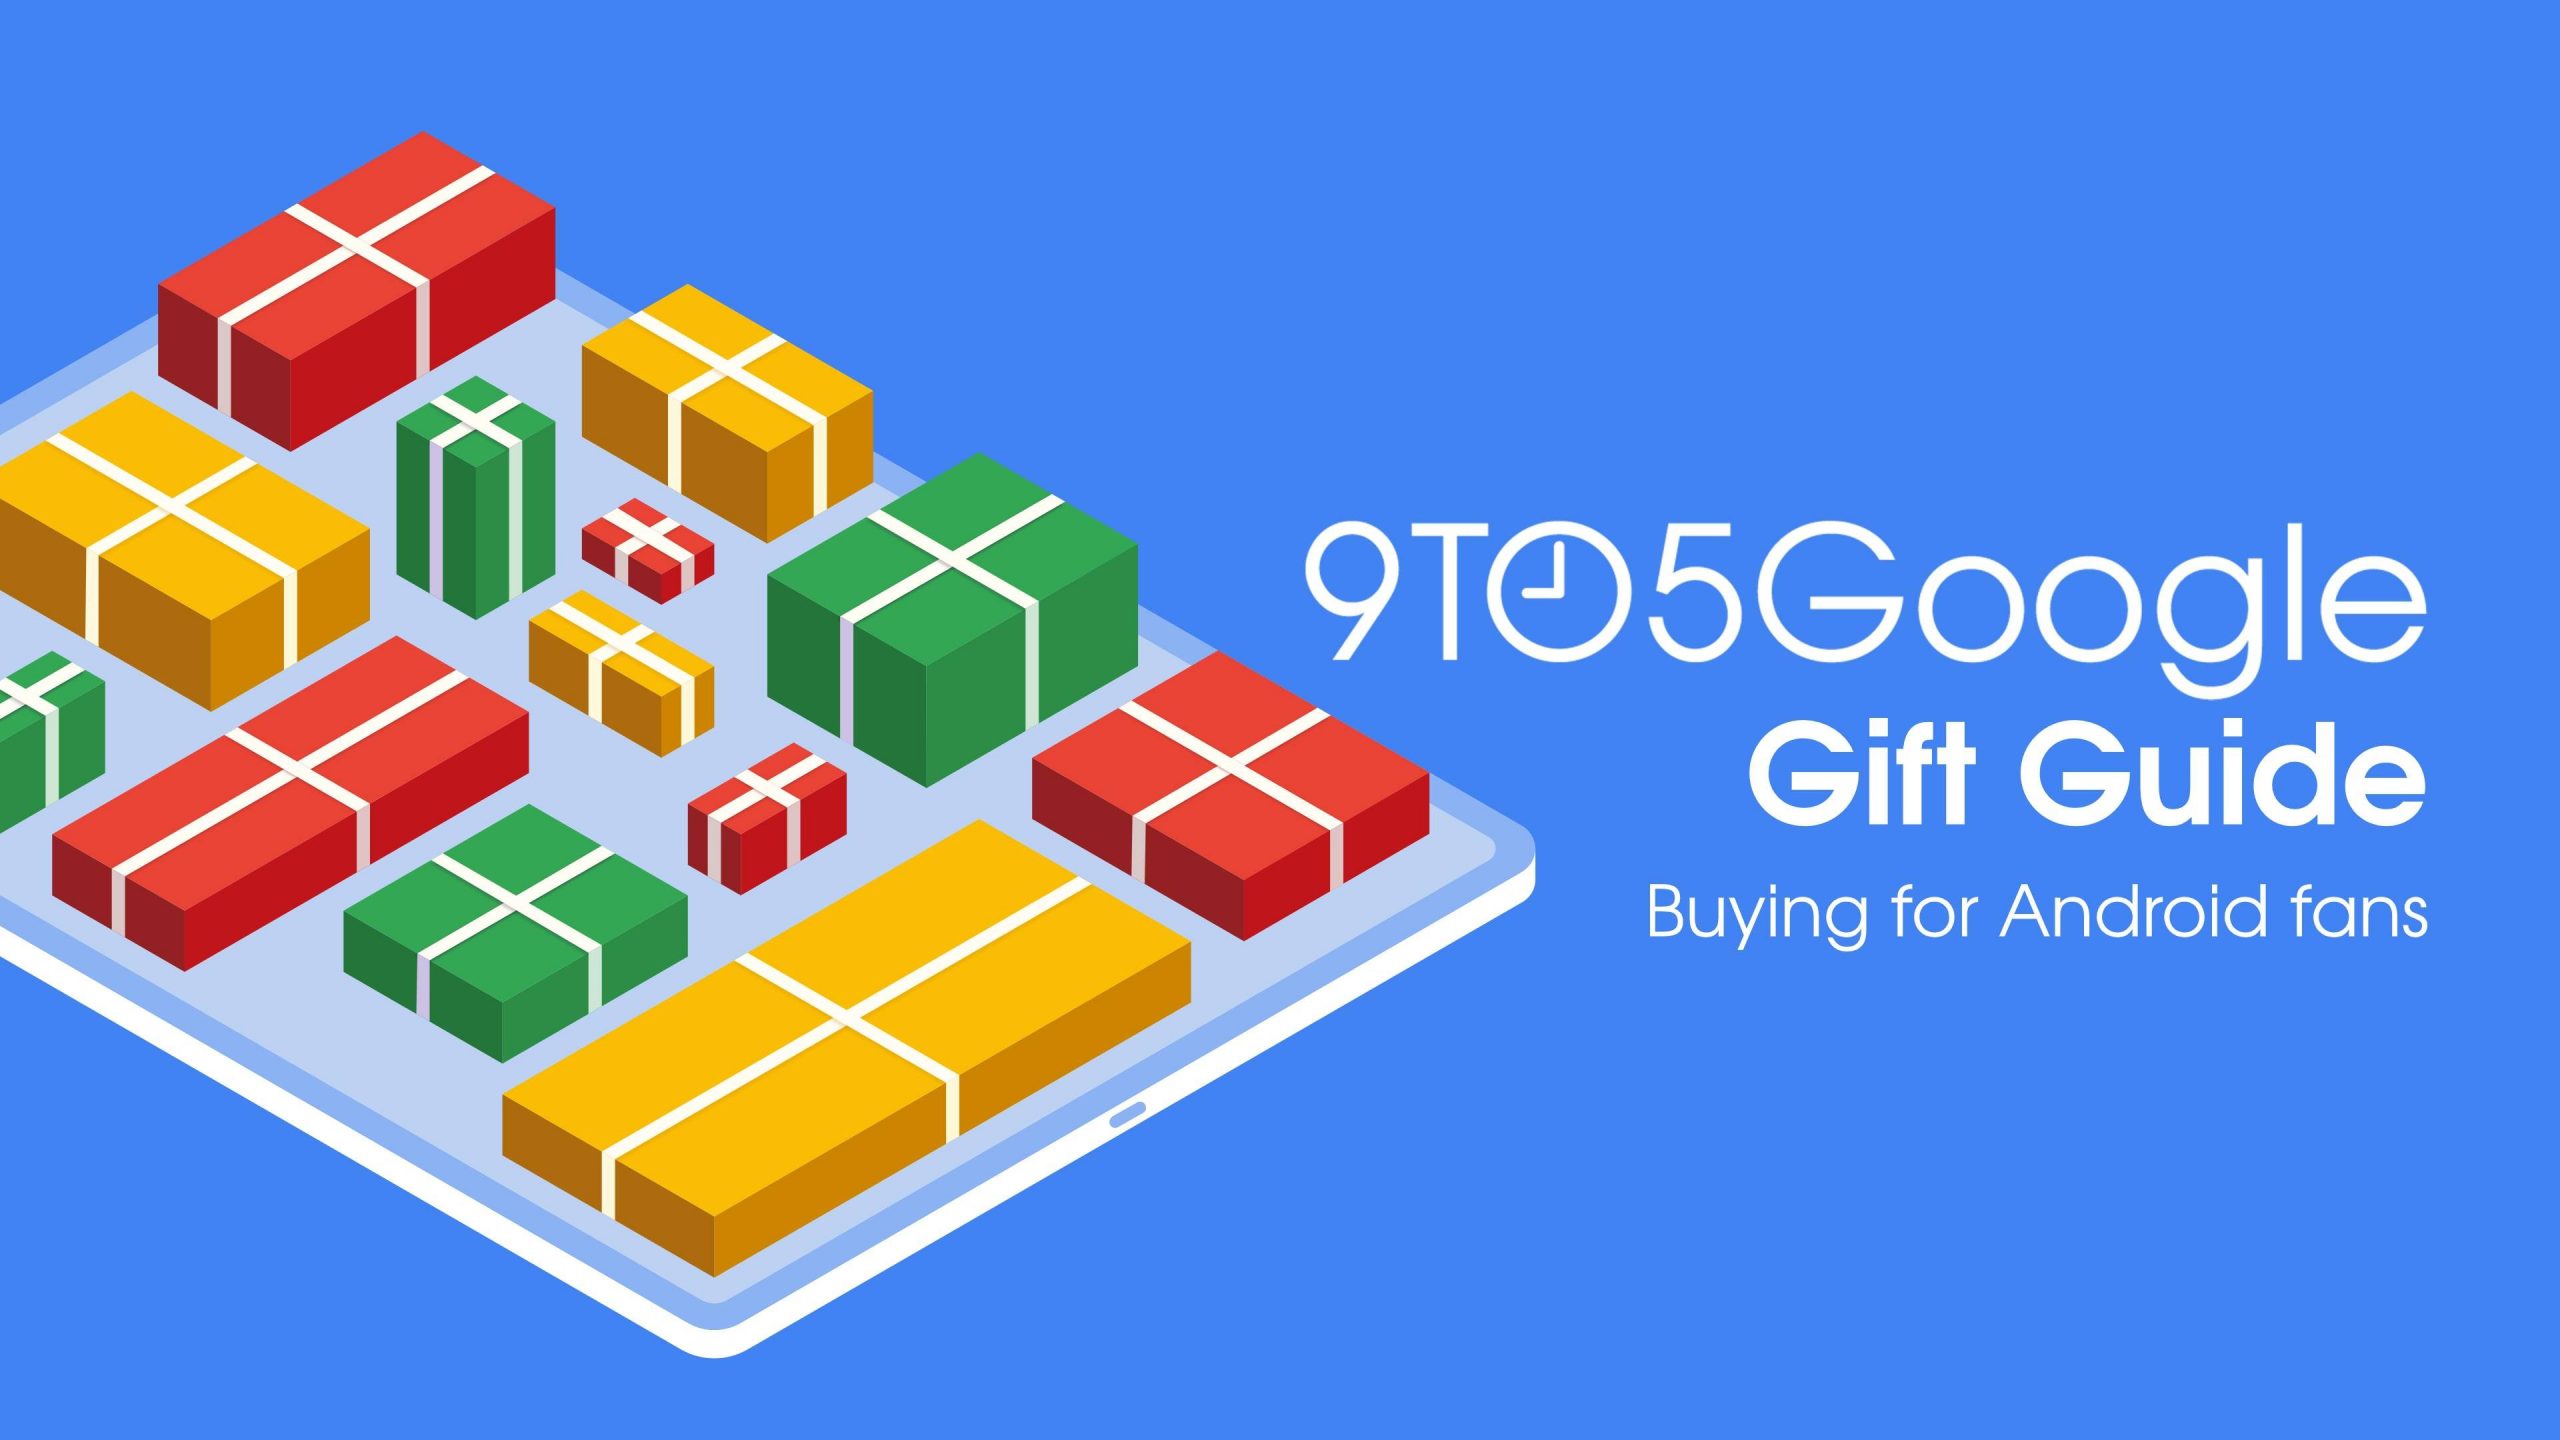 9to5Guia de presentes do Google: compra para fãs do Android com tudo